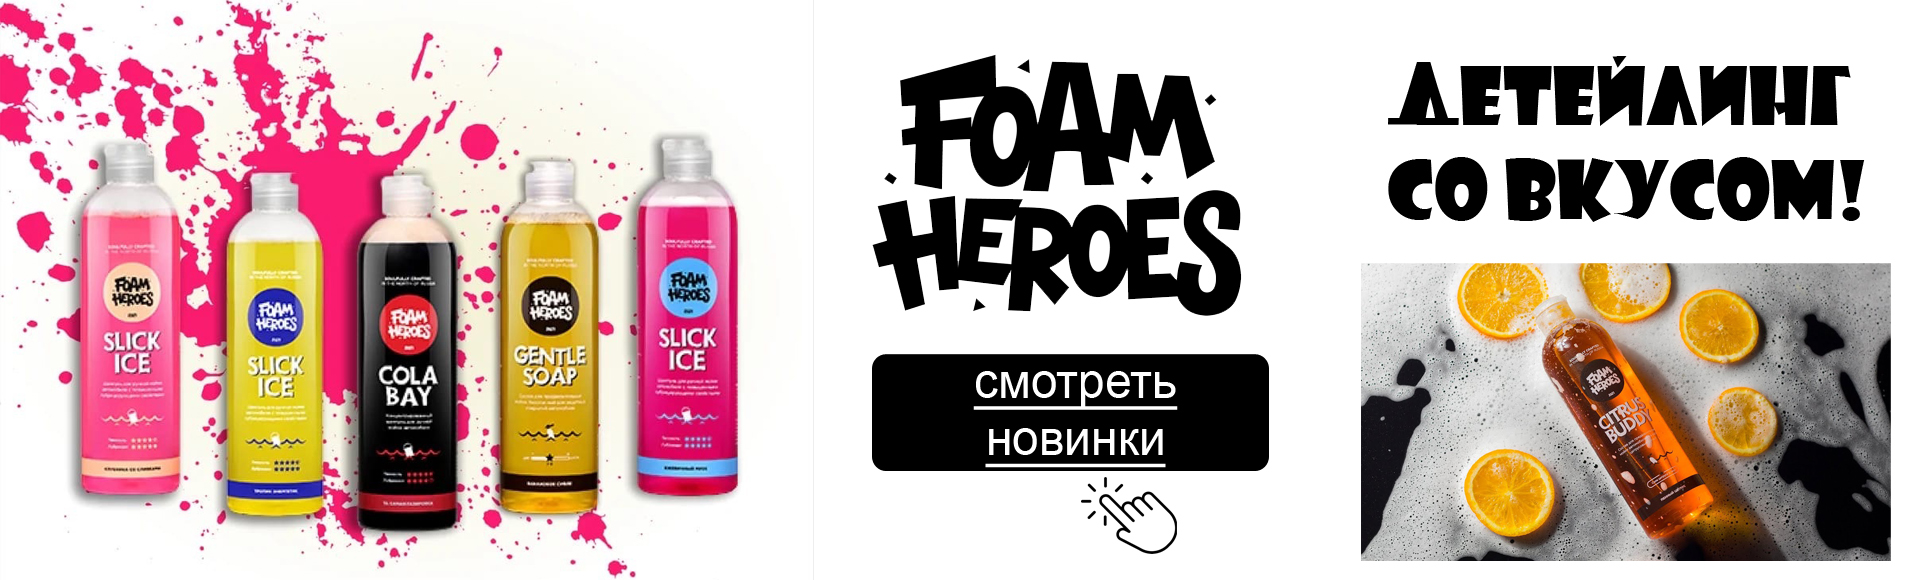 foam-heroes